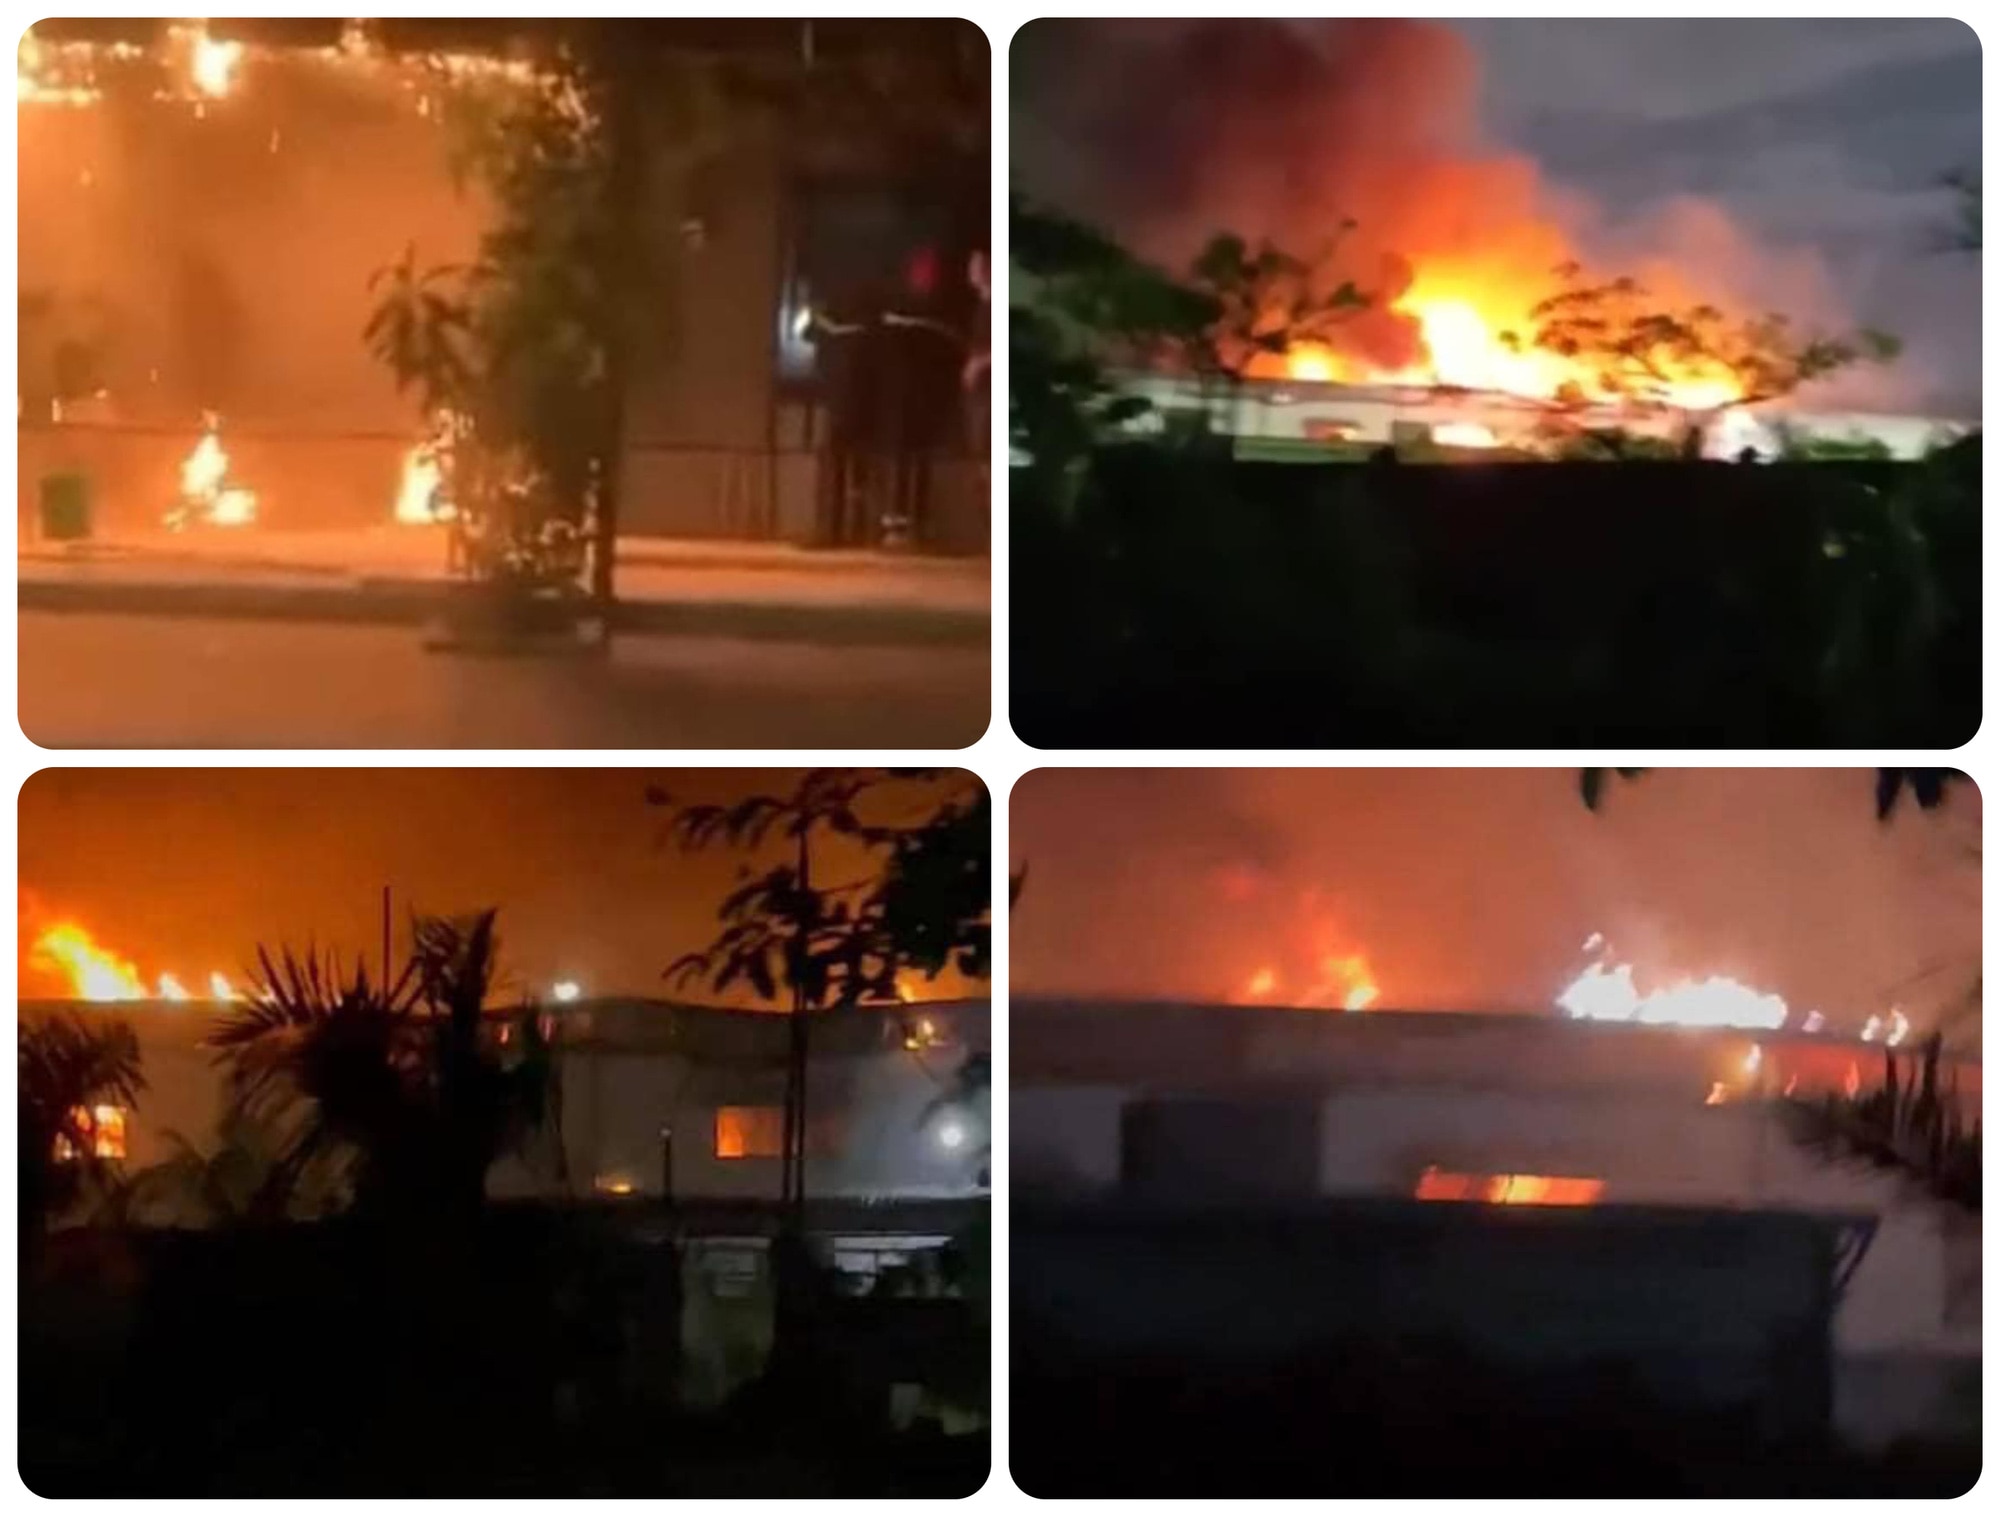 Hiện trường vụ cháy kho chứa bìa các tông của doanh nghiệp trong Khu công nghiệp Phúc Khánh, TP Thái Bình, tỉnh Thái Bình đêm 20-6 - Ảnh: Facebook BEAT THÁI BÌNH